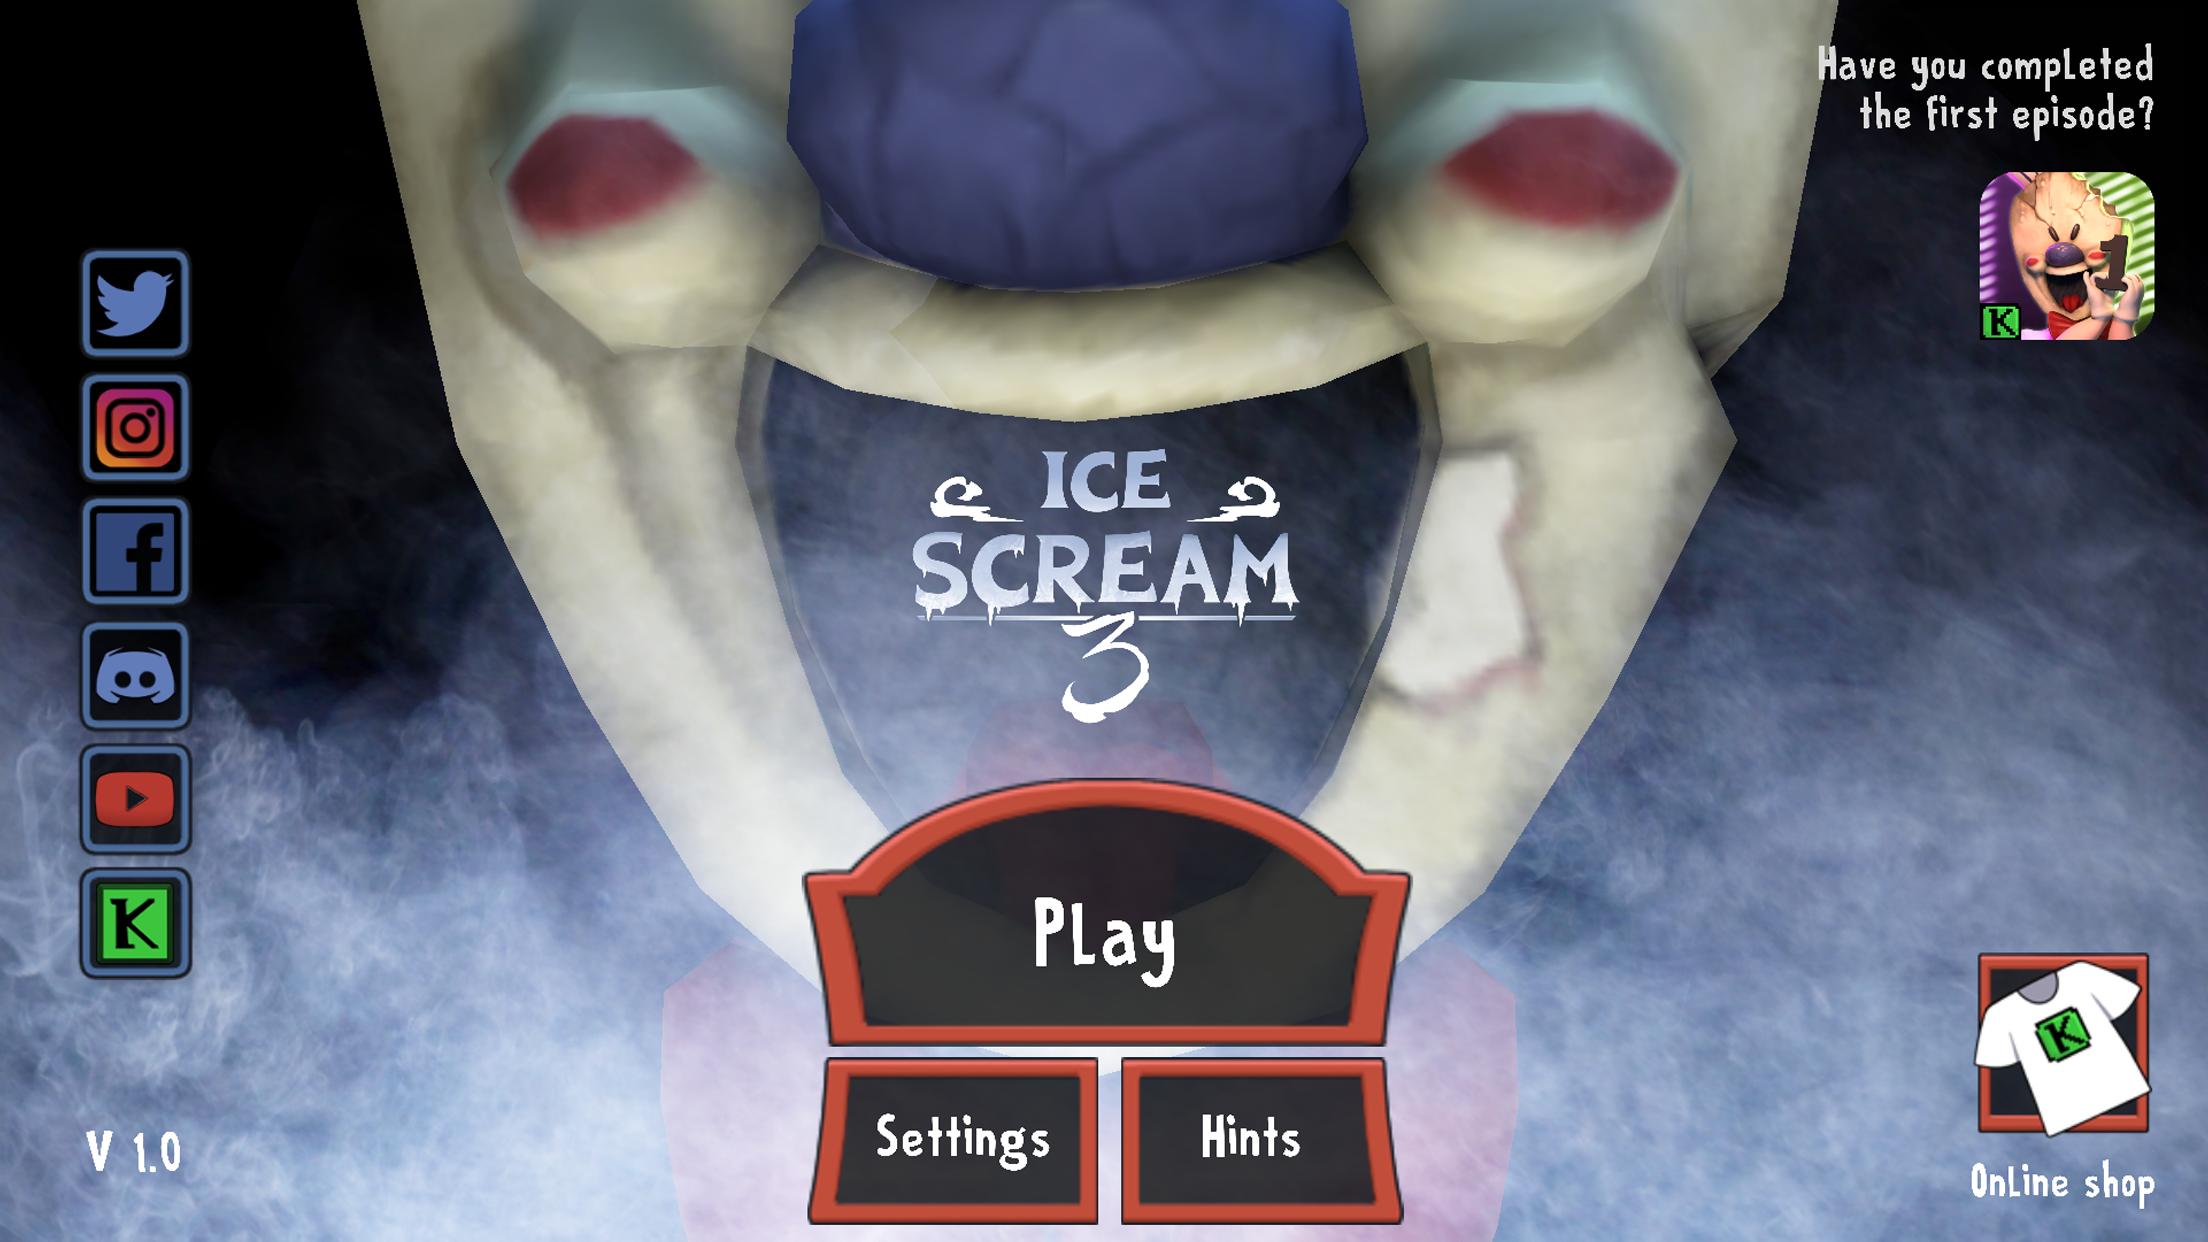 Игры про рот. Игра Ice Cream Horror. Ice Cream 1 игра род мороженщик. Мороженщик Ice Scream 3.